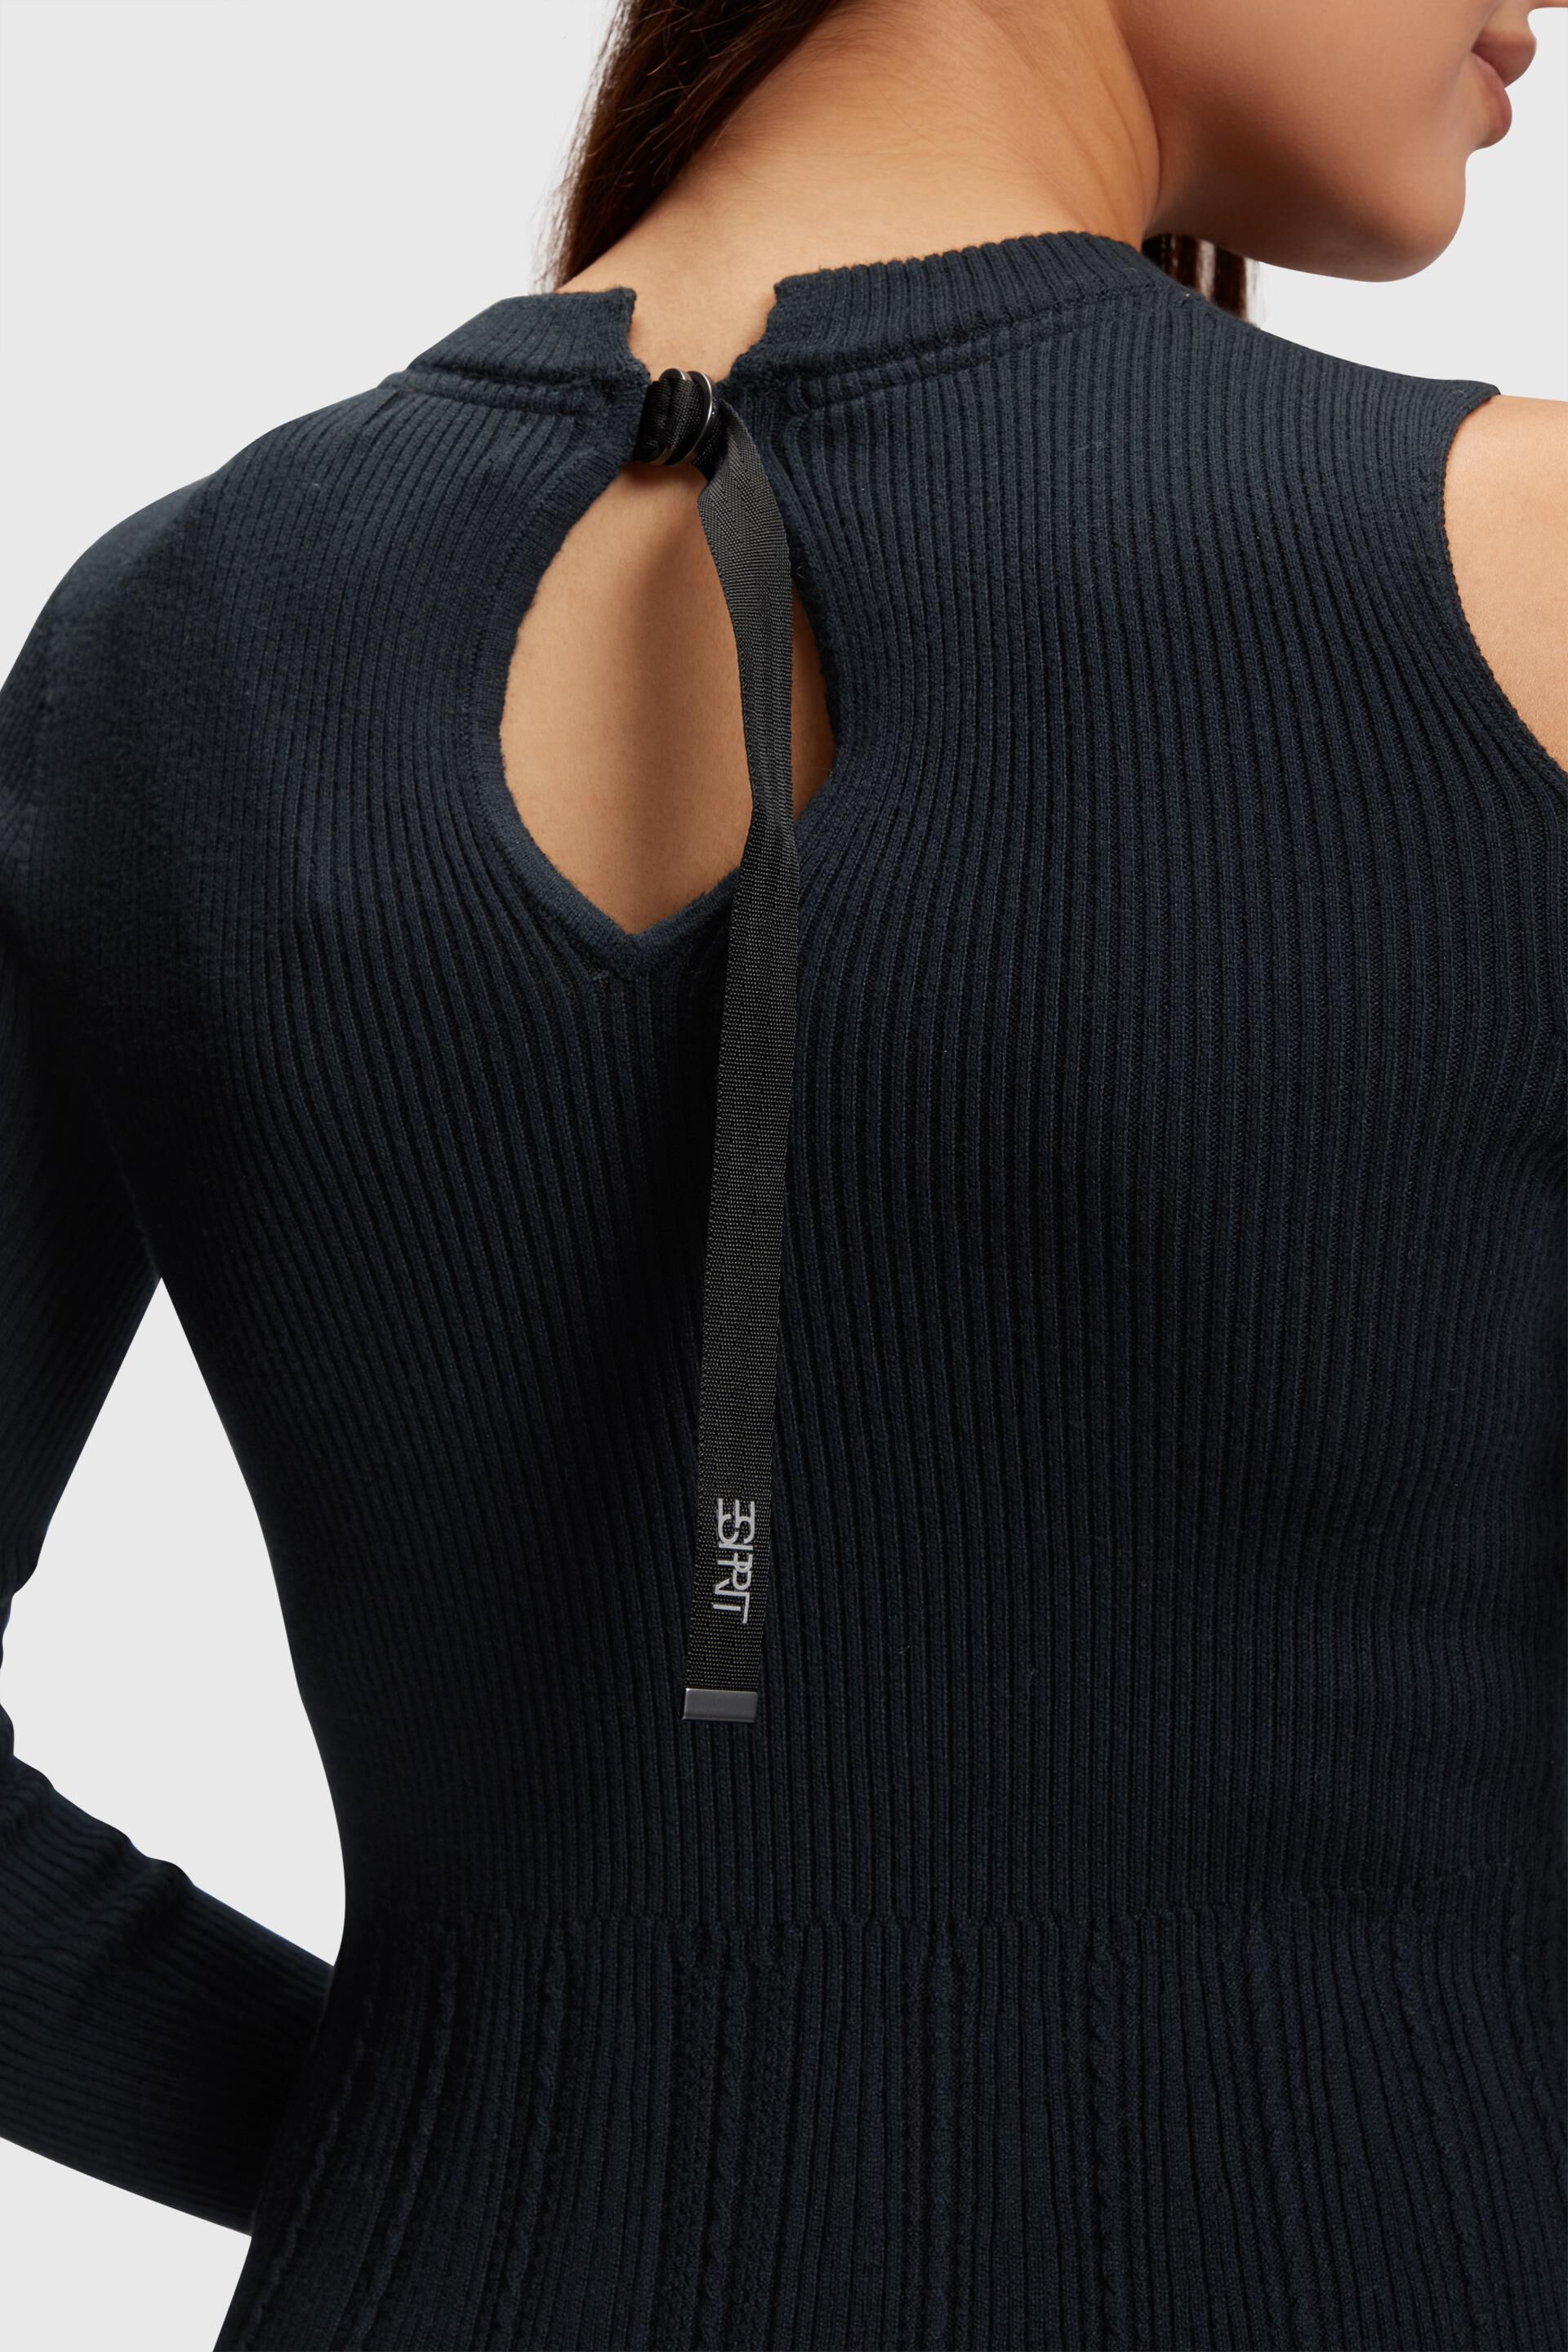 Esprit ausgeschnittenen Schultern mit Sweatshirtkleid